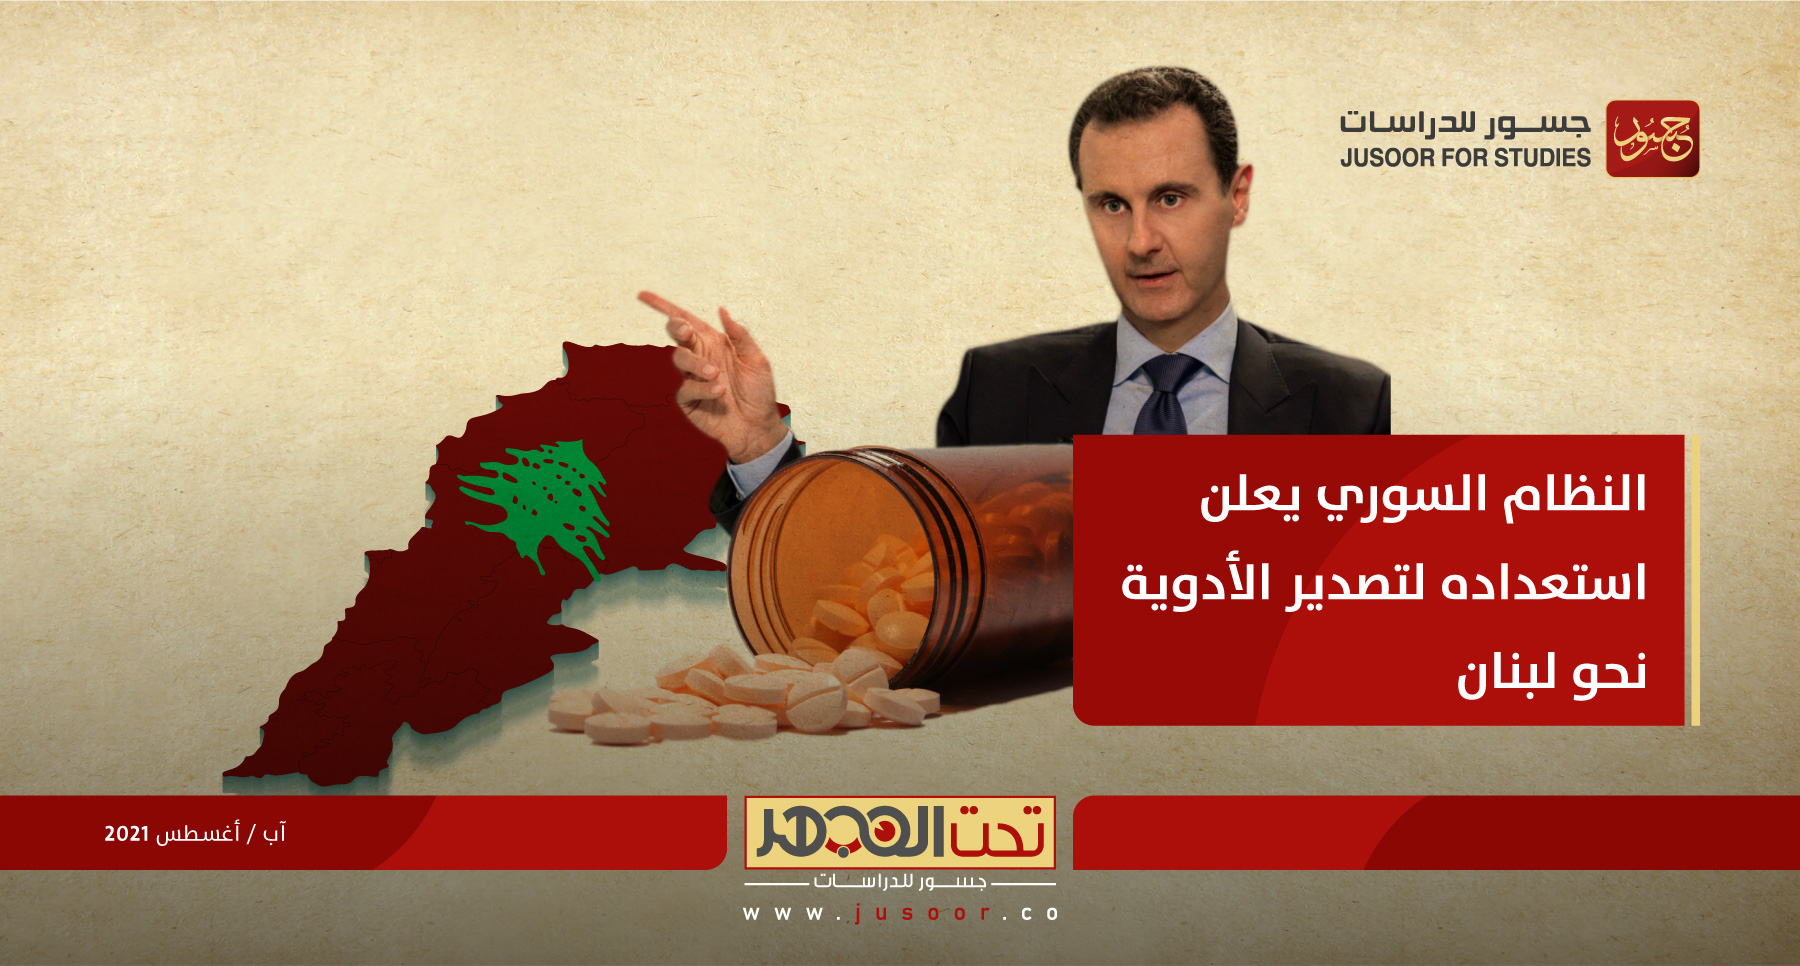 النظام السوري يعلن استعداده لتصدير الأدوية نحو لبنان